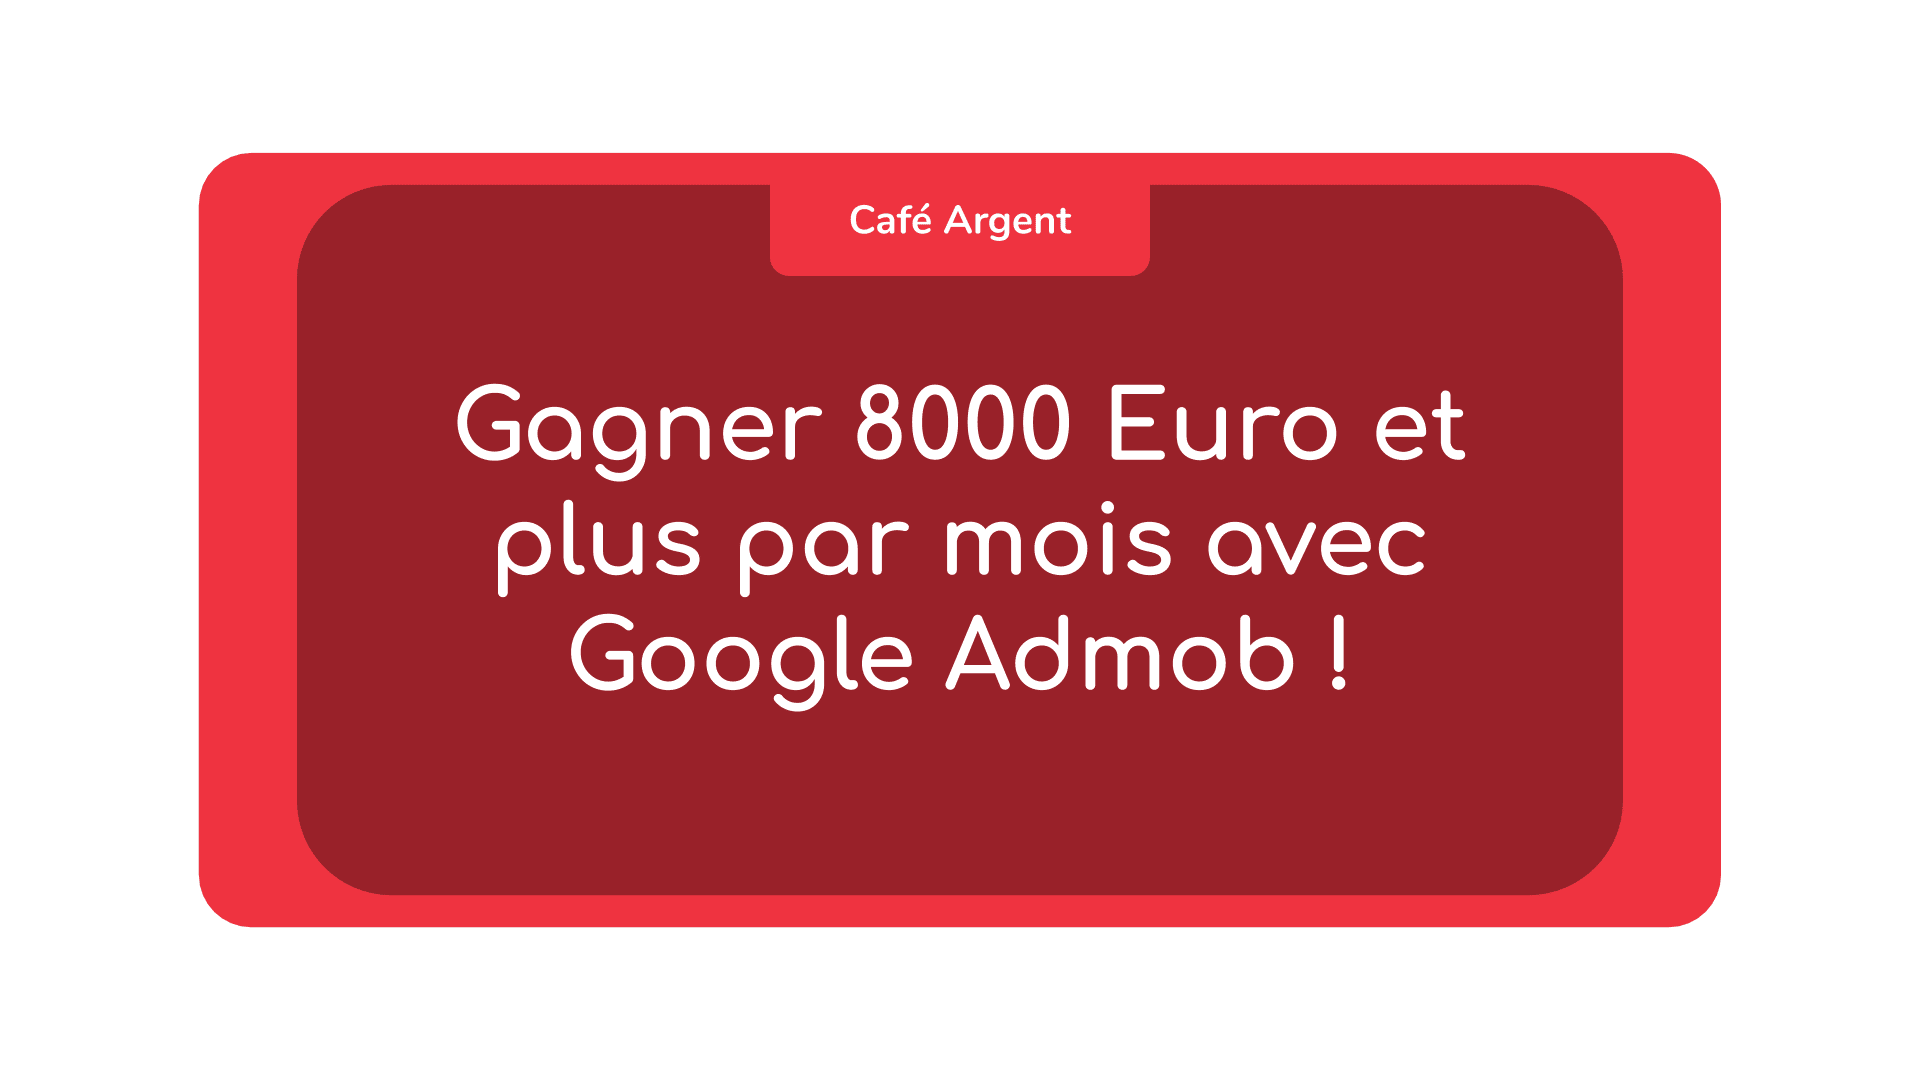 Gagner 8000 Euro et plus par mois avec Google Admob